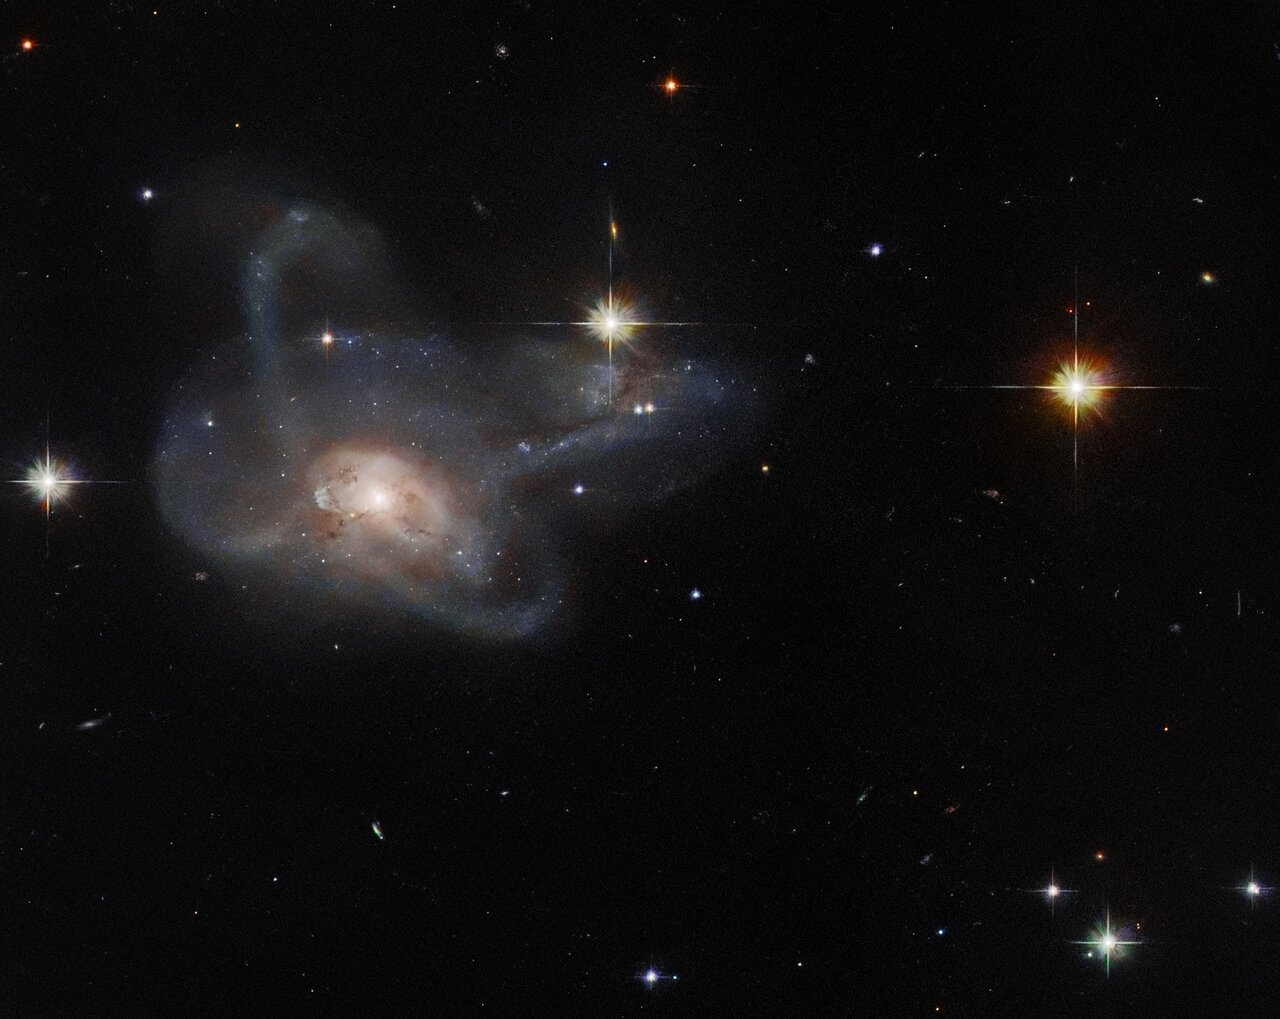 Хаббл сфотографировал необычное слияние галактик в созвездии Ориона фото 1